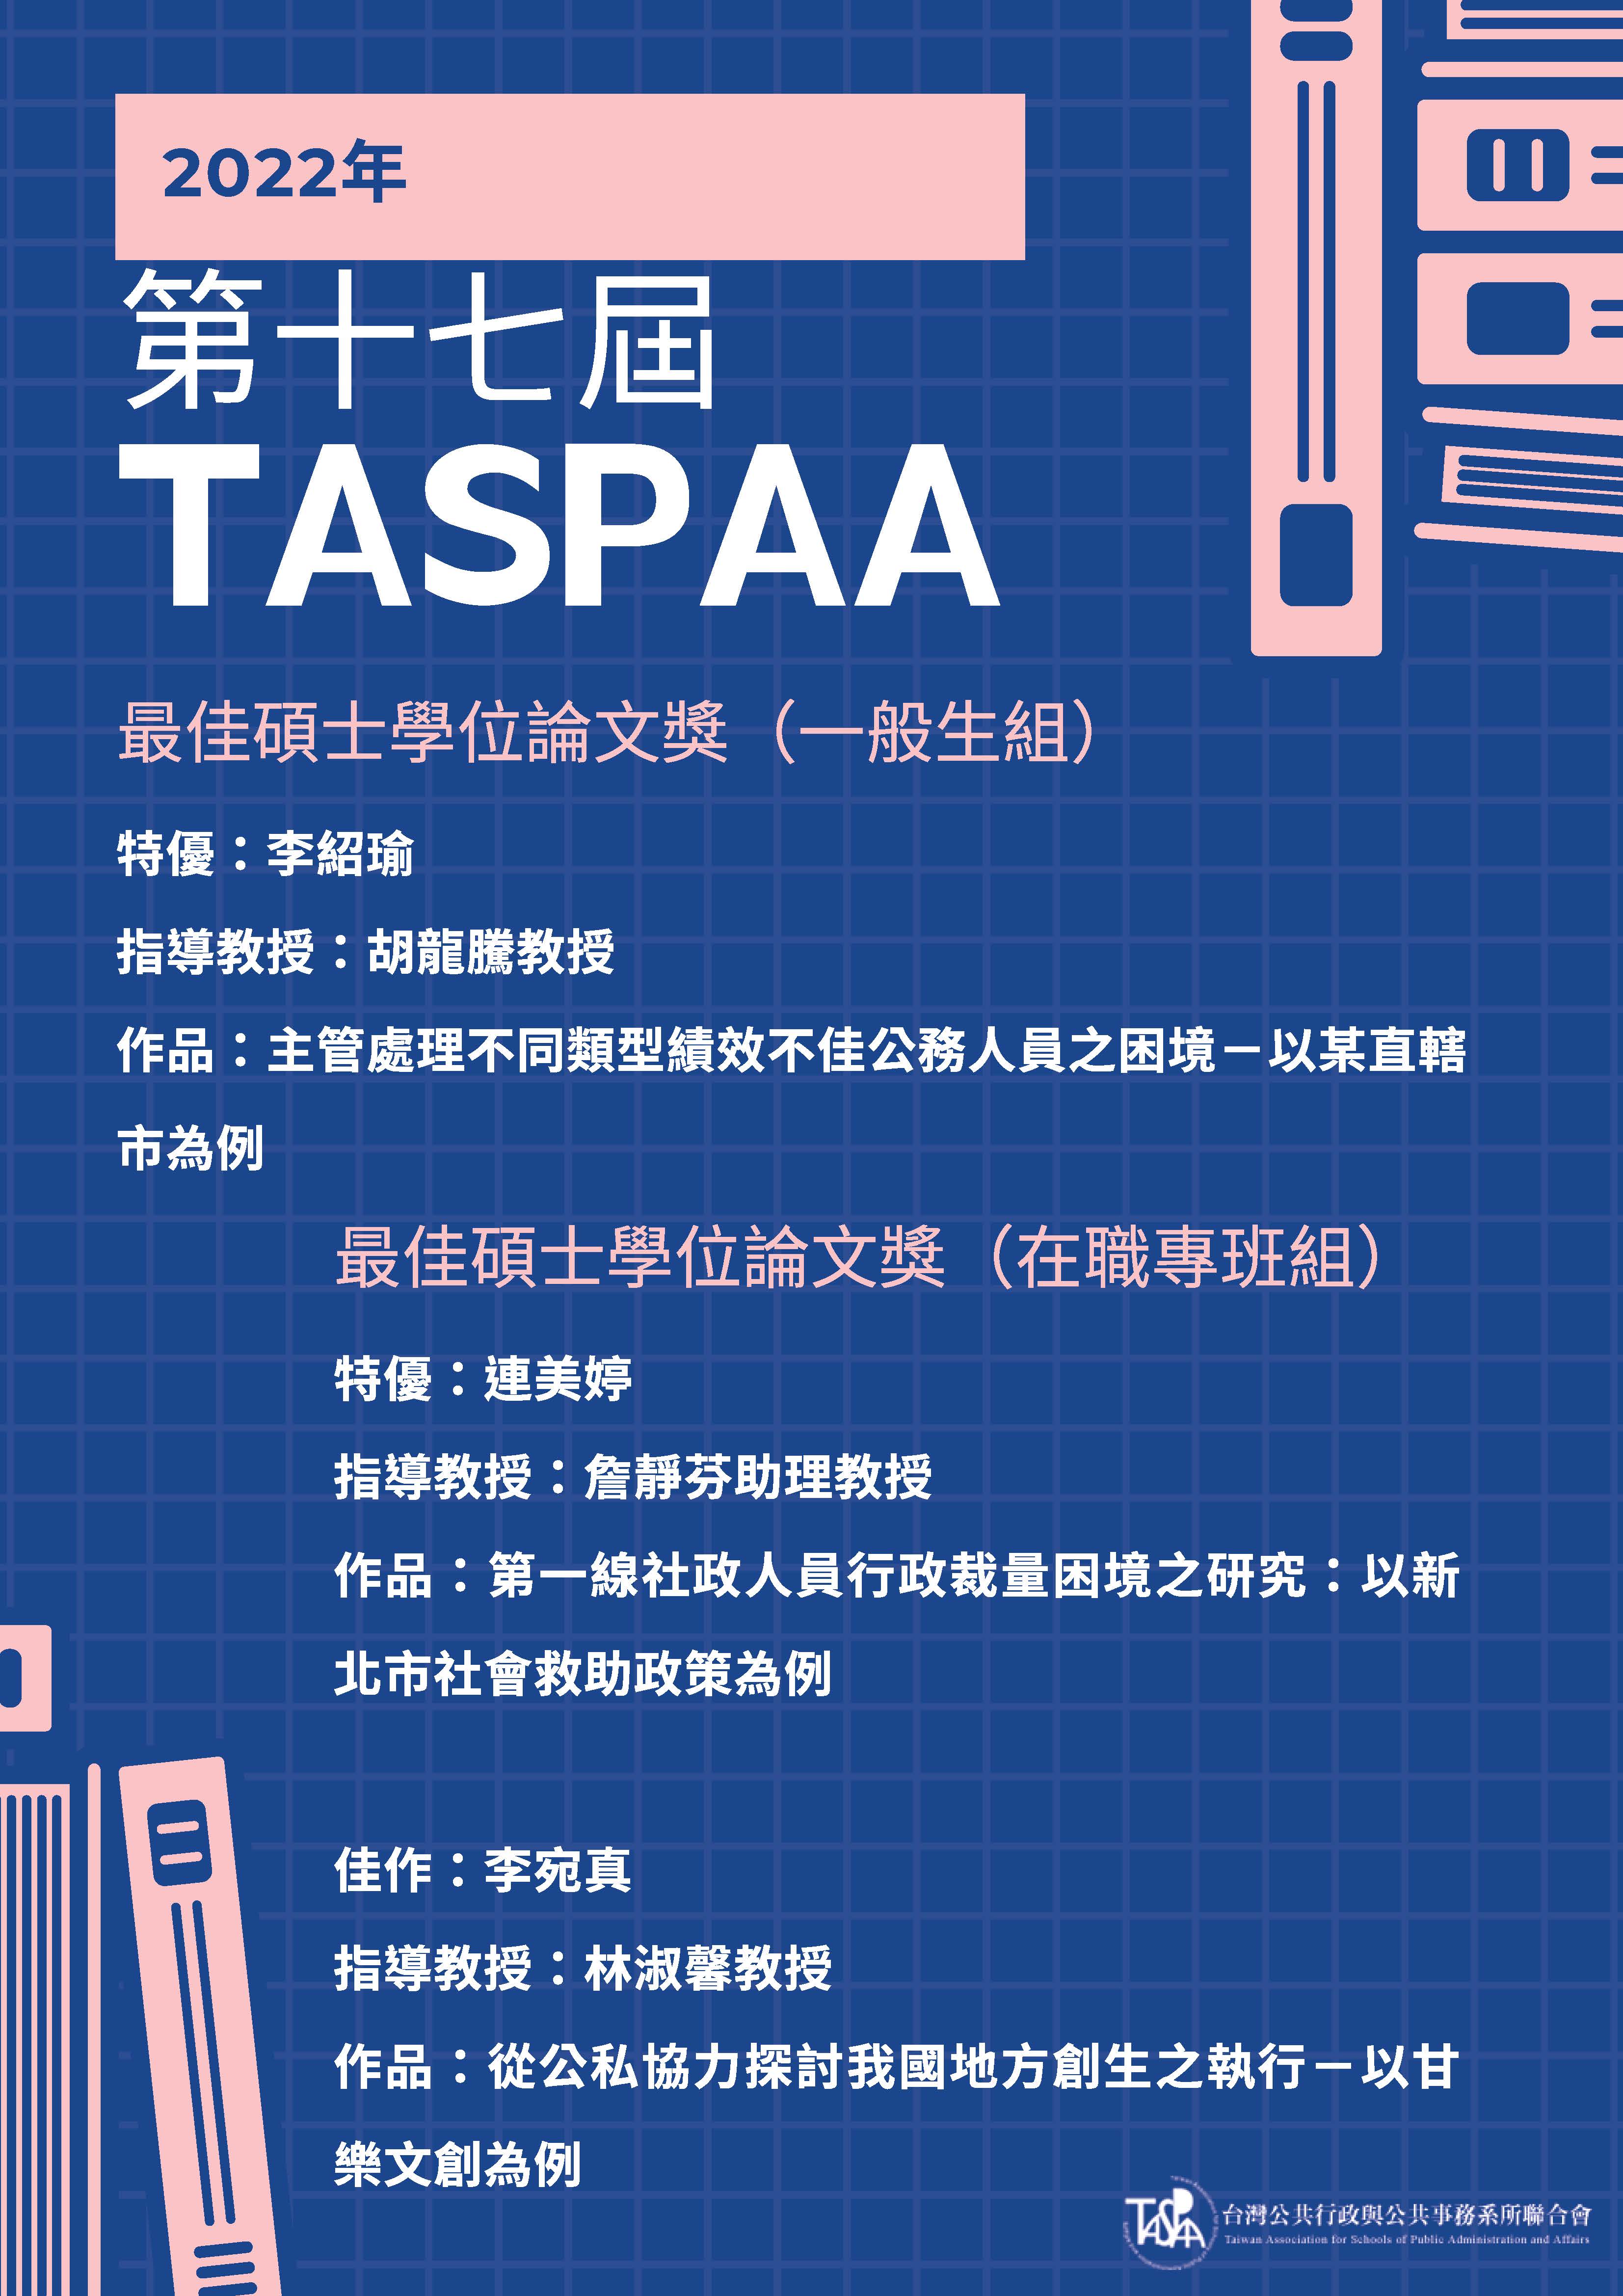 2022年第17屆TASPAA最佳碩士學位論文獎得獎海報